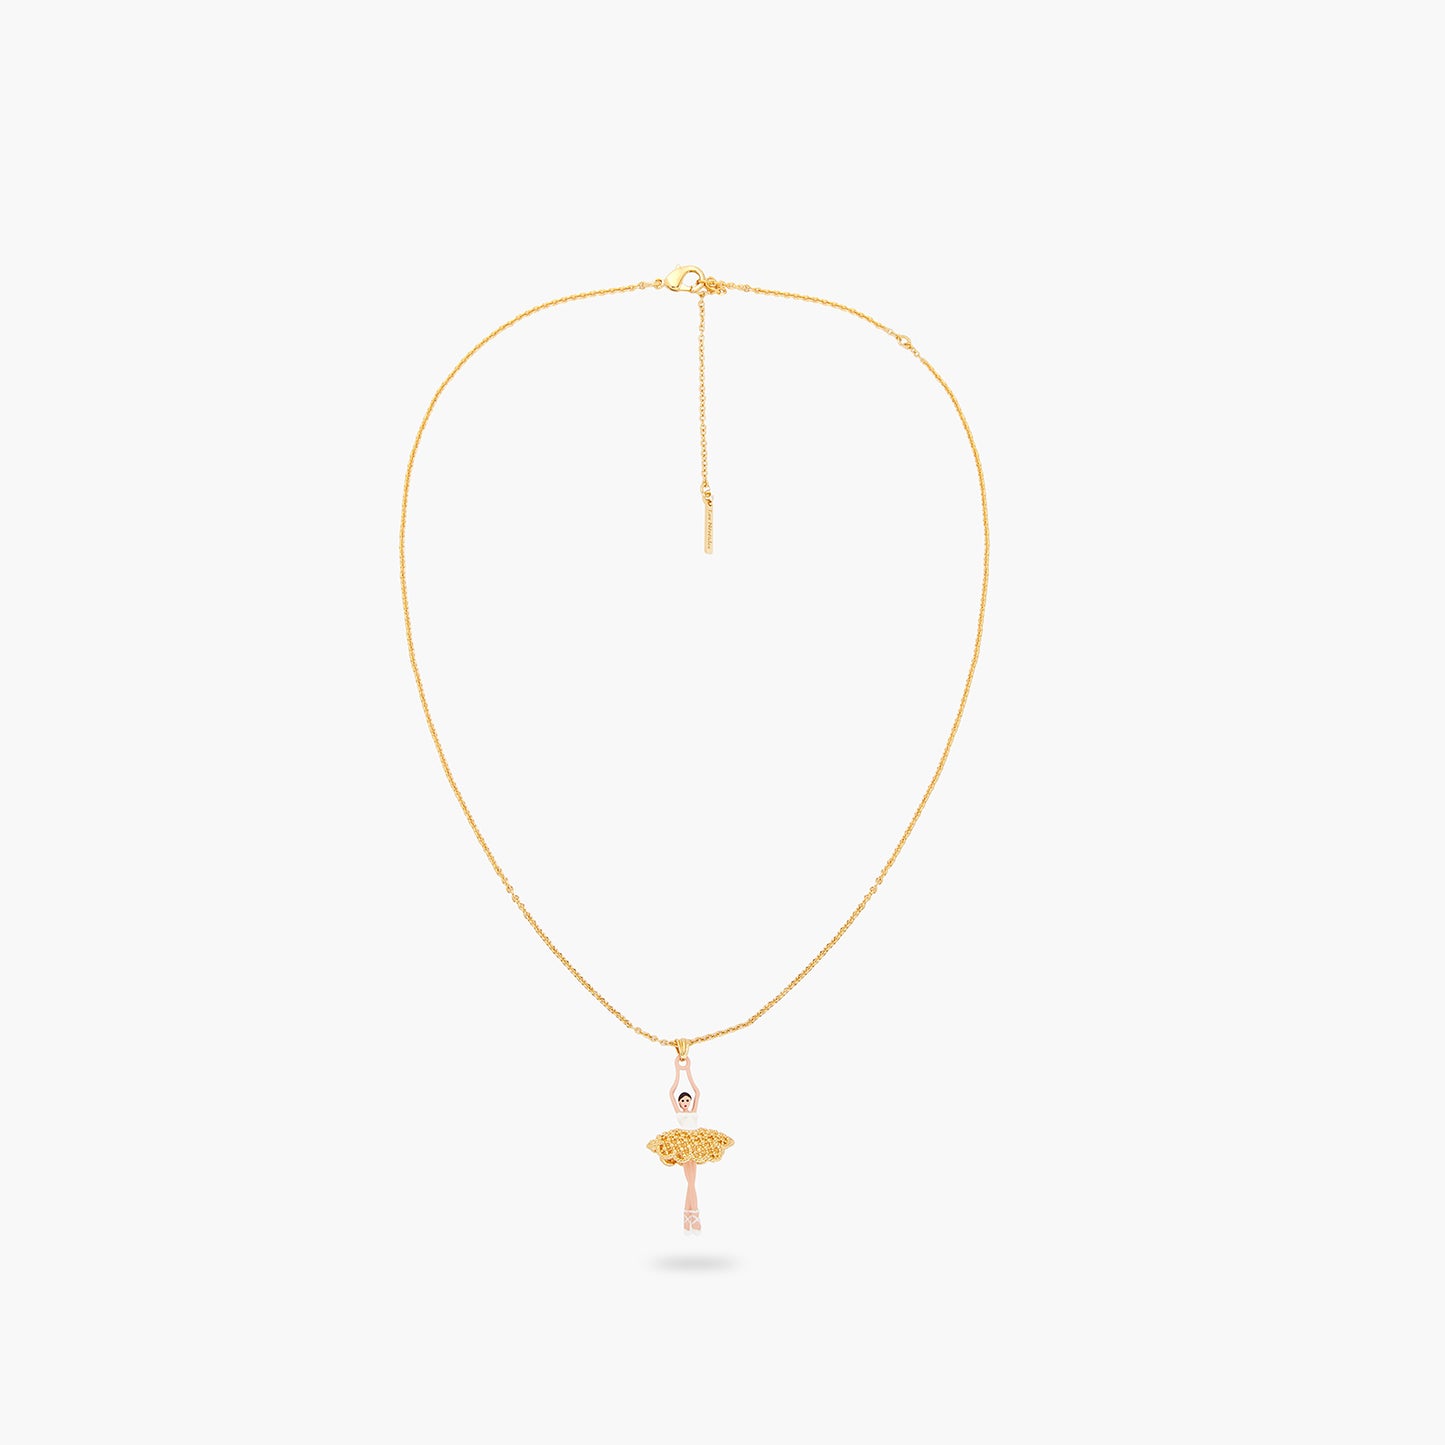 Gold Lace Tutu Ballerina Pendant Necklace | ARDD3591